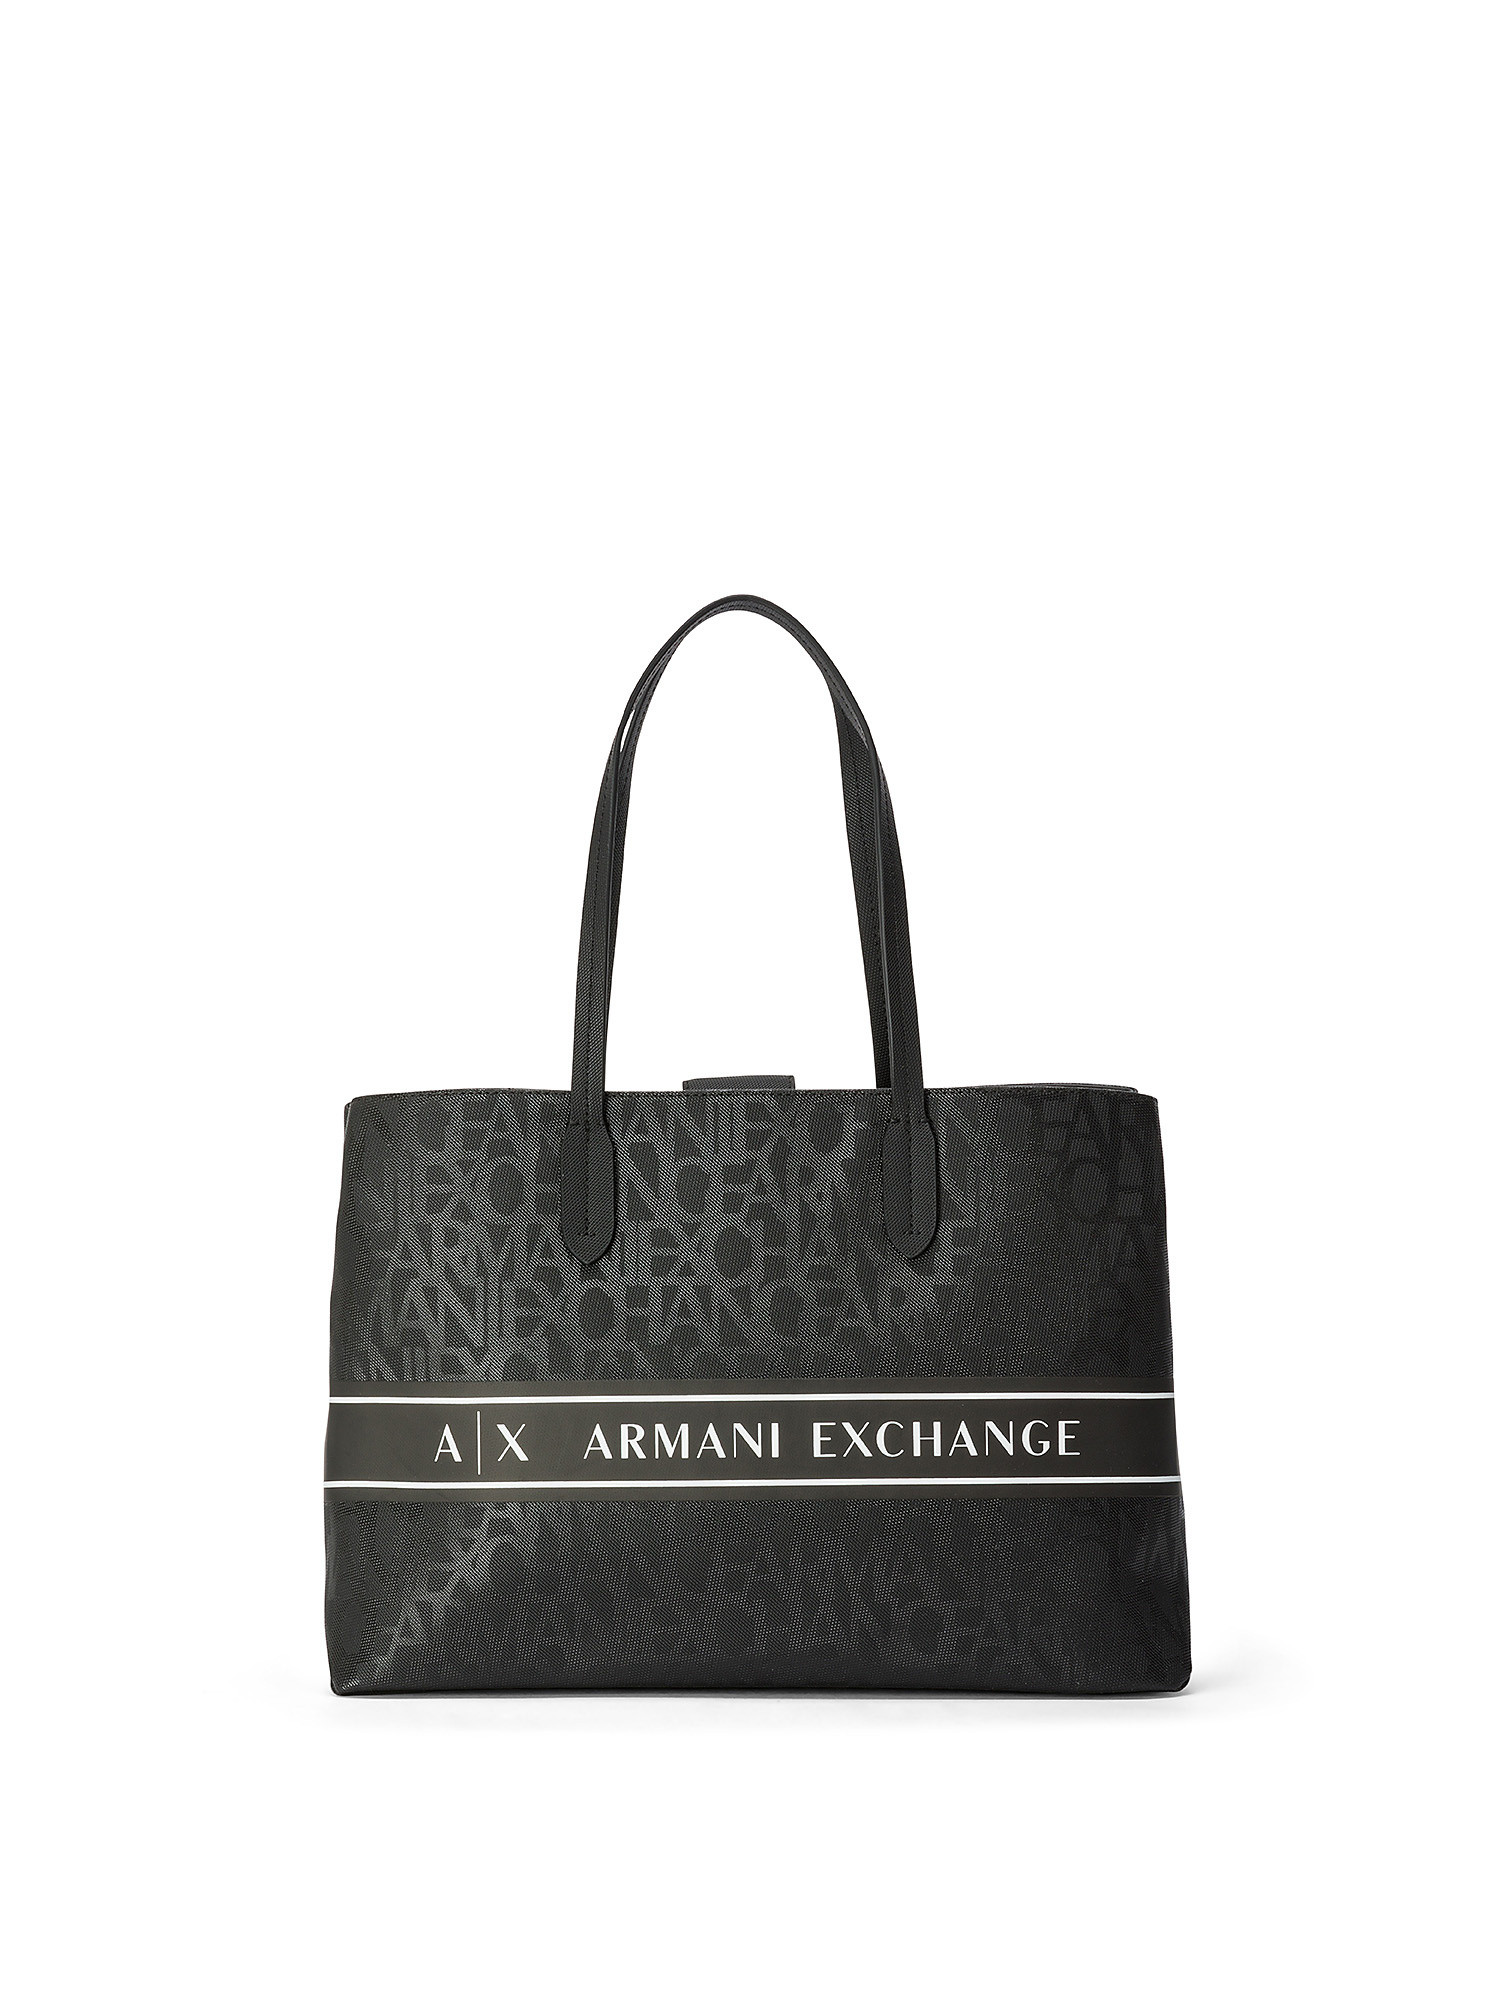 Armani Exchange - Shopper bag with all-over logo, Black, large image number 0